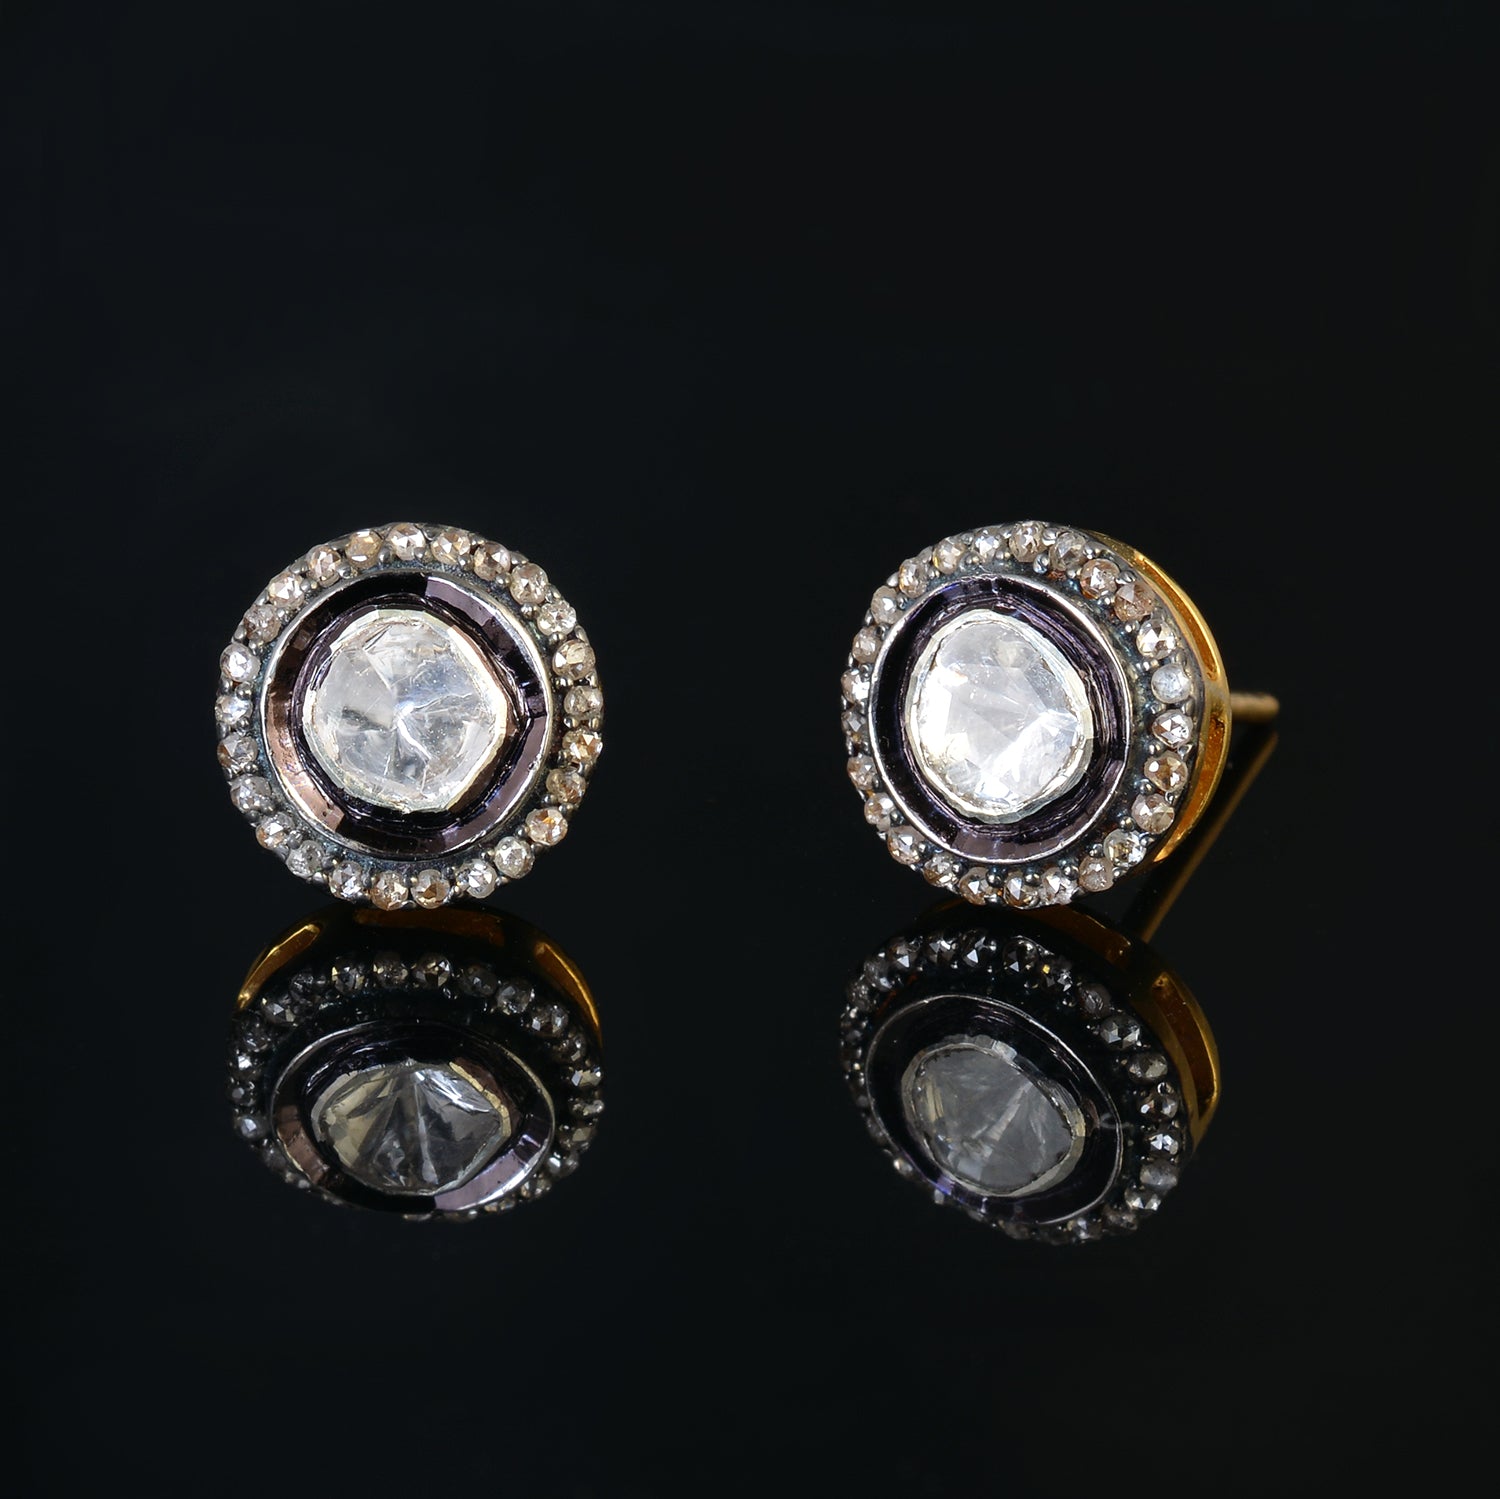 925 Silver Polki Stud Earrings